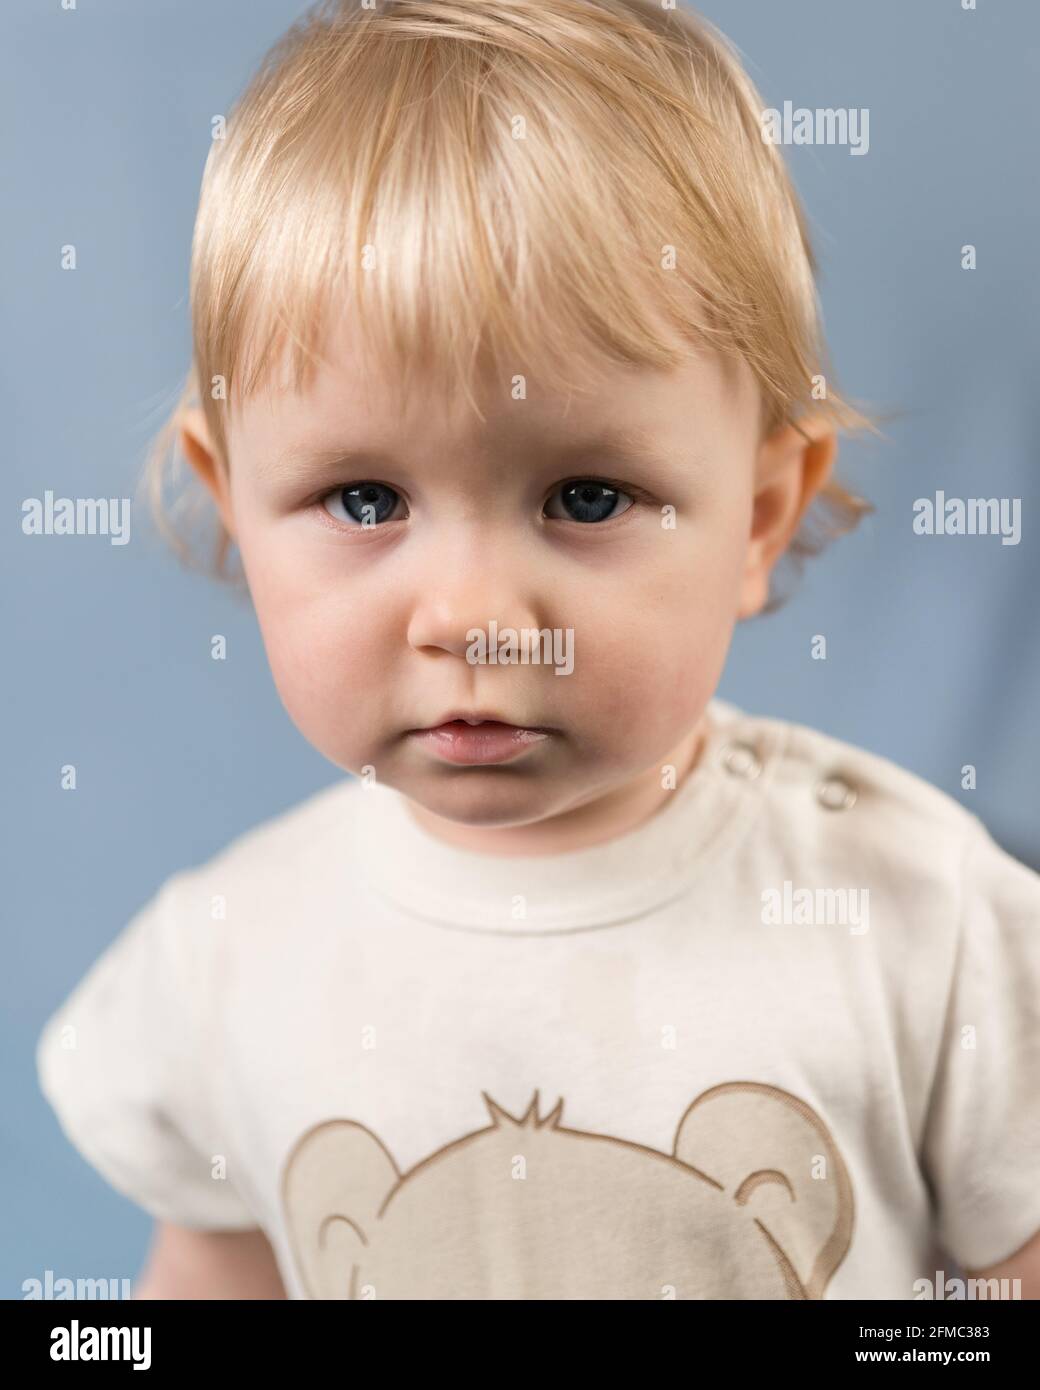 Portrait en gros plan d'une fille blonde âgée de 1 an. Le regard sérieux d'un enfant aux yeux bleus Banque D'Images